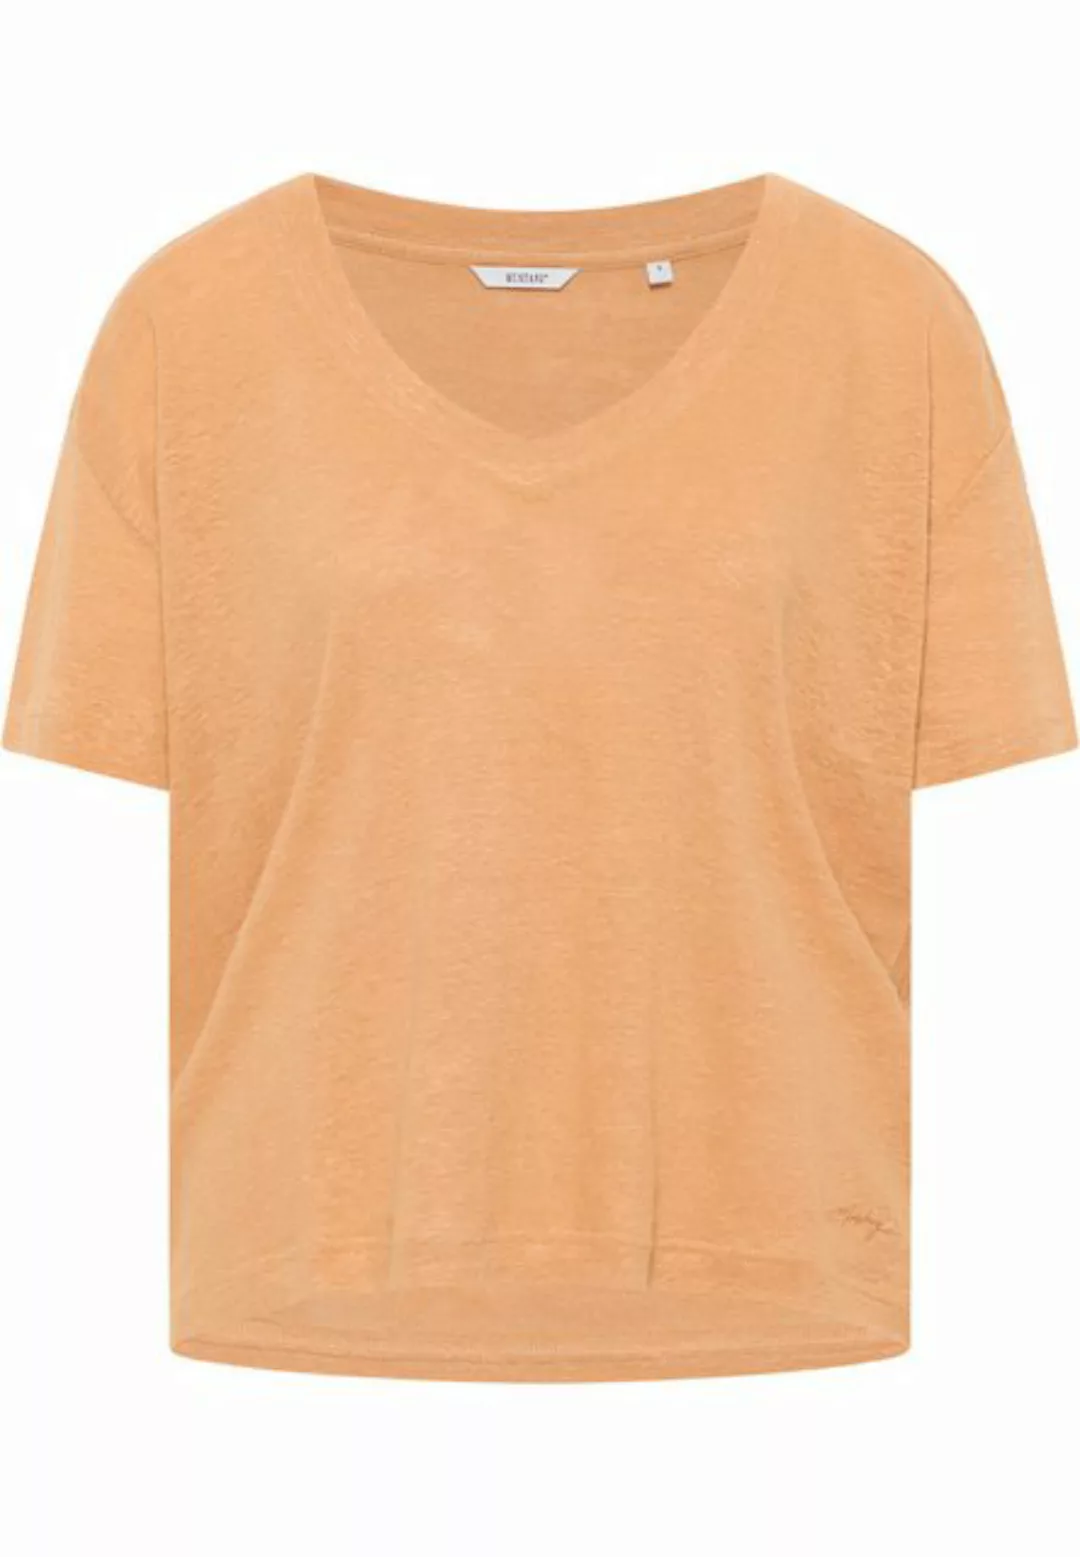 MUSTANG Kurzarmshirt "T-Shirt" günstig online kaufen